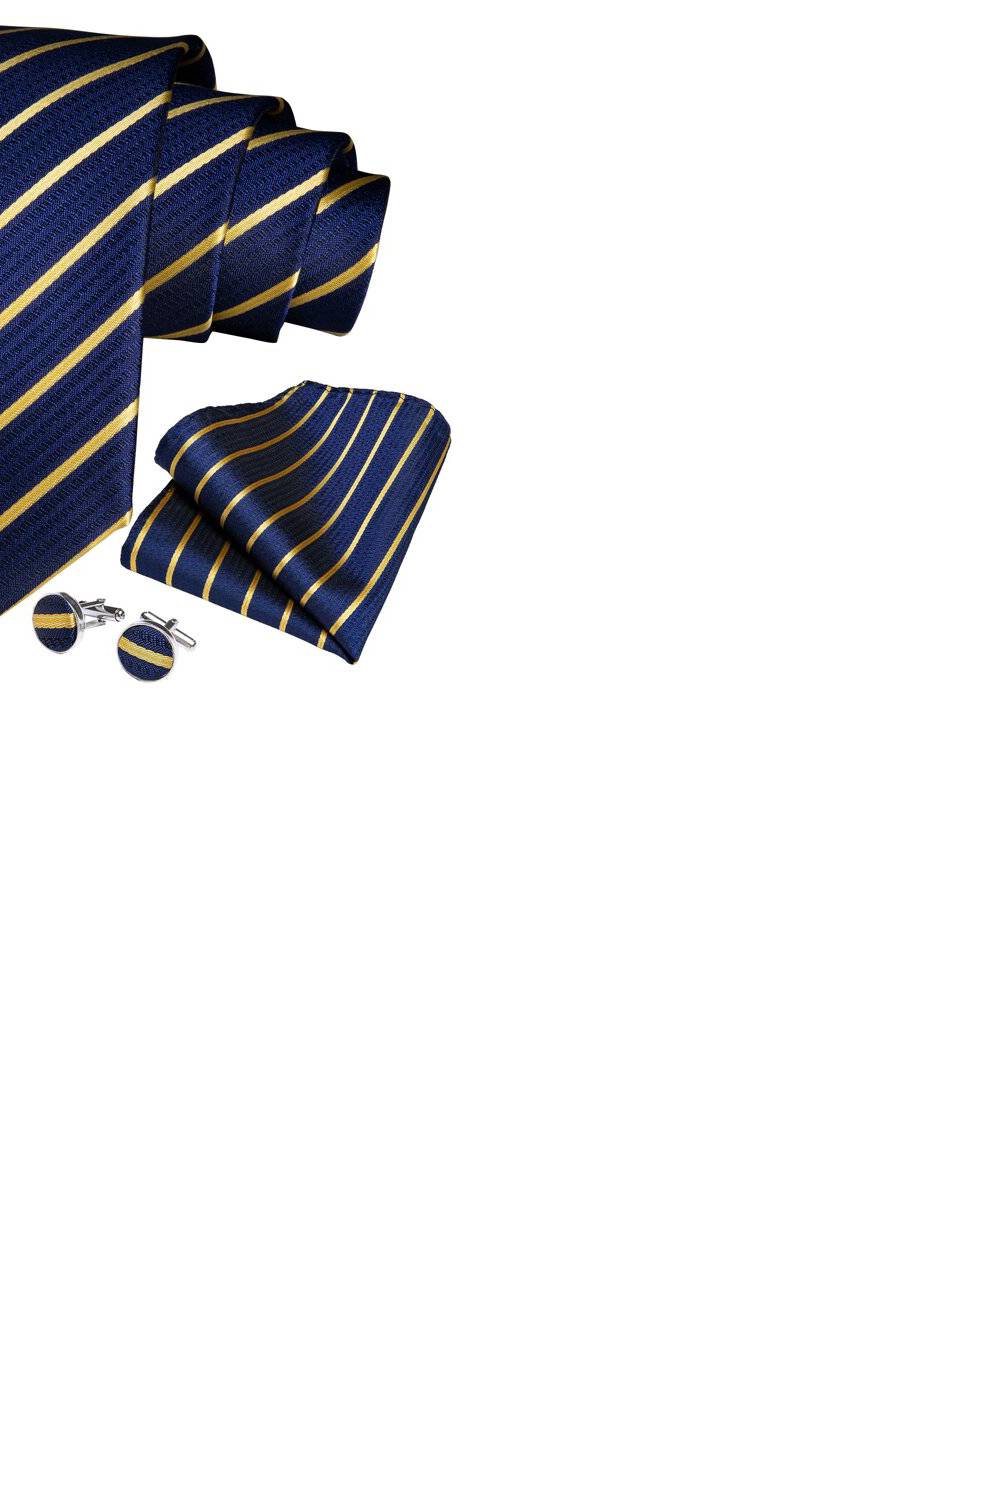 SONEC FASHION - Set Corbata Hombres  paño y gemelos. Blue Golden